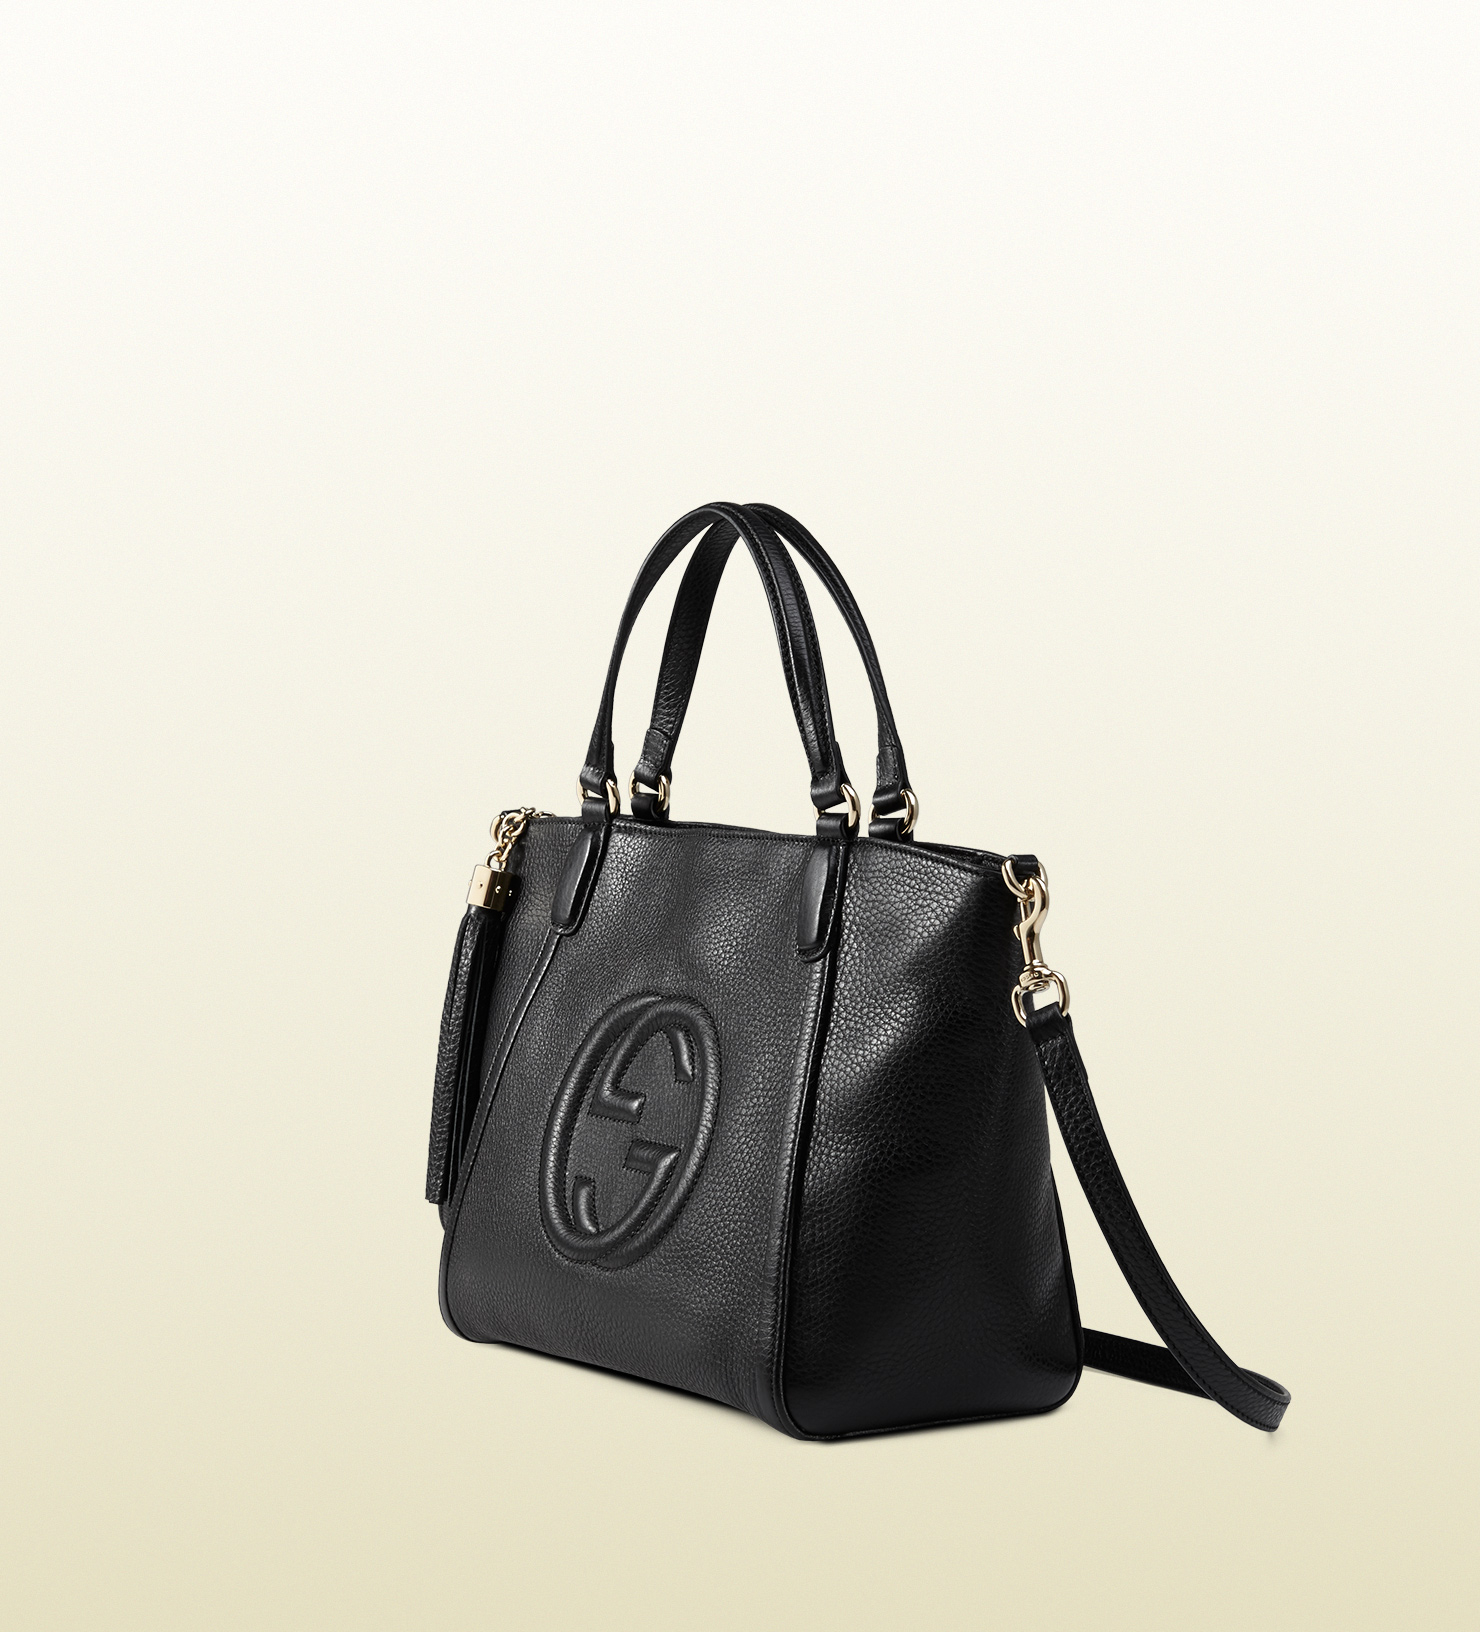 Gucci Black Leather Bag Deals, 59% OFF | lagence.tv